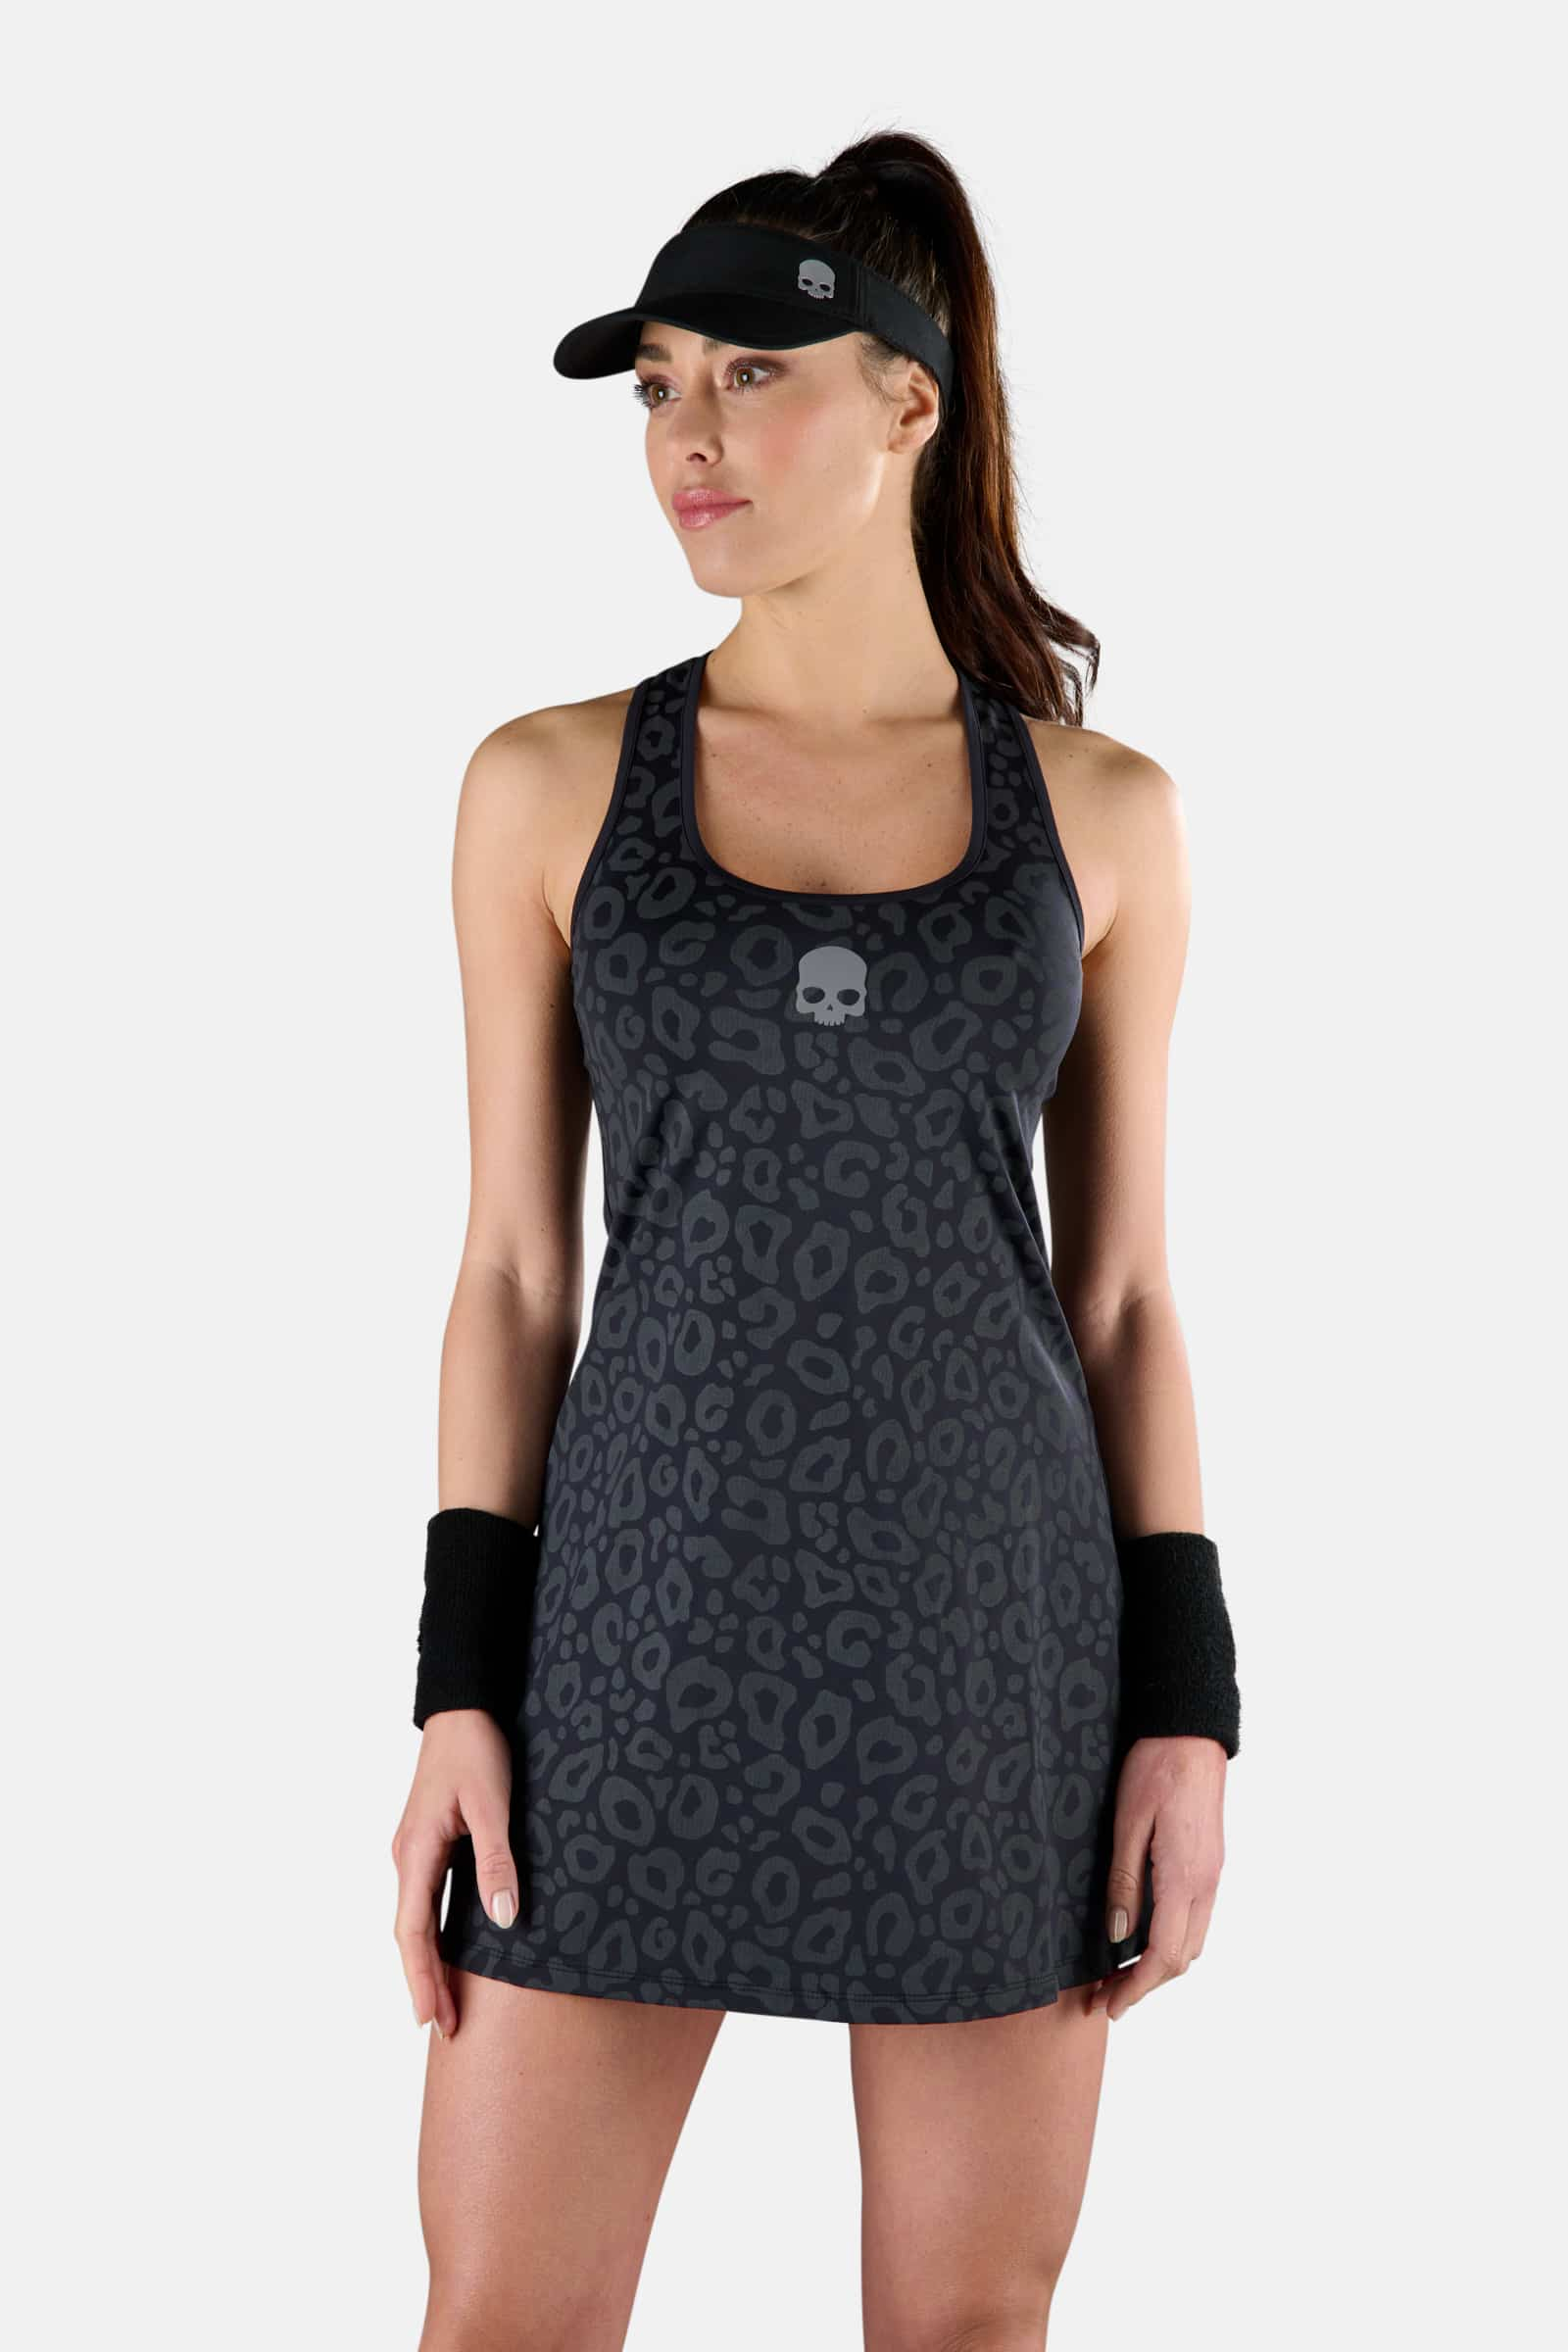 PANTHER TECH DRESS - Apparel - Hydrogen - Luxury Sportwear